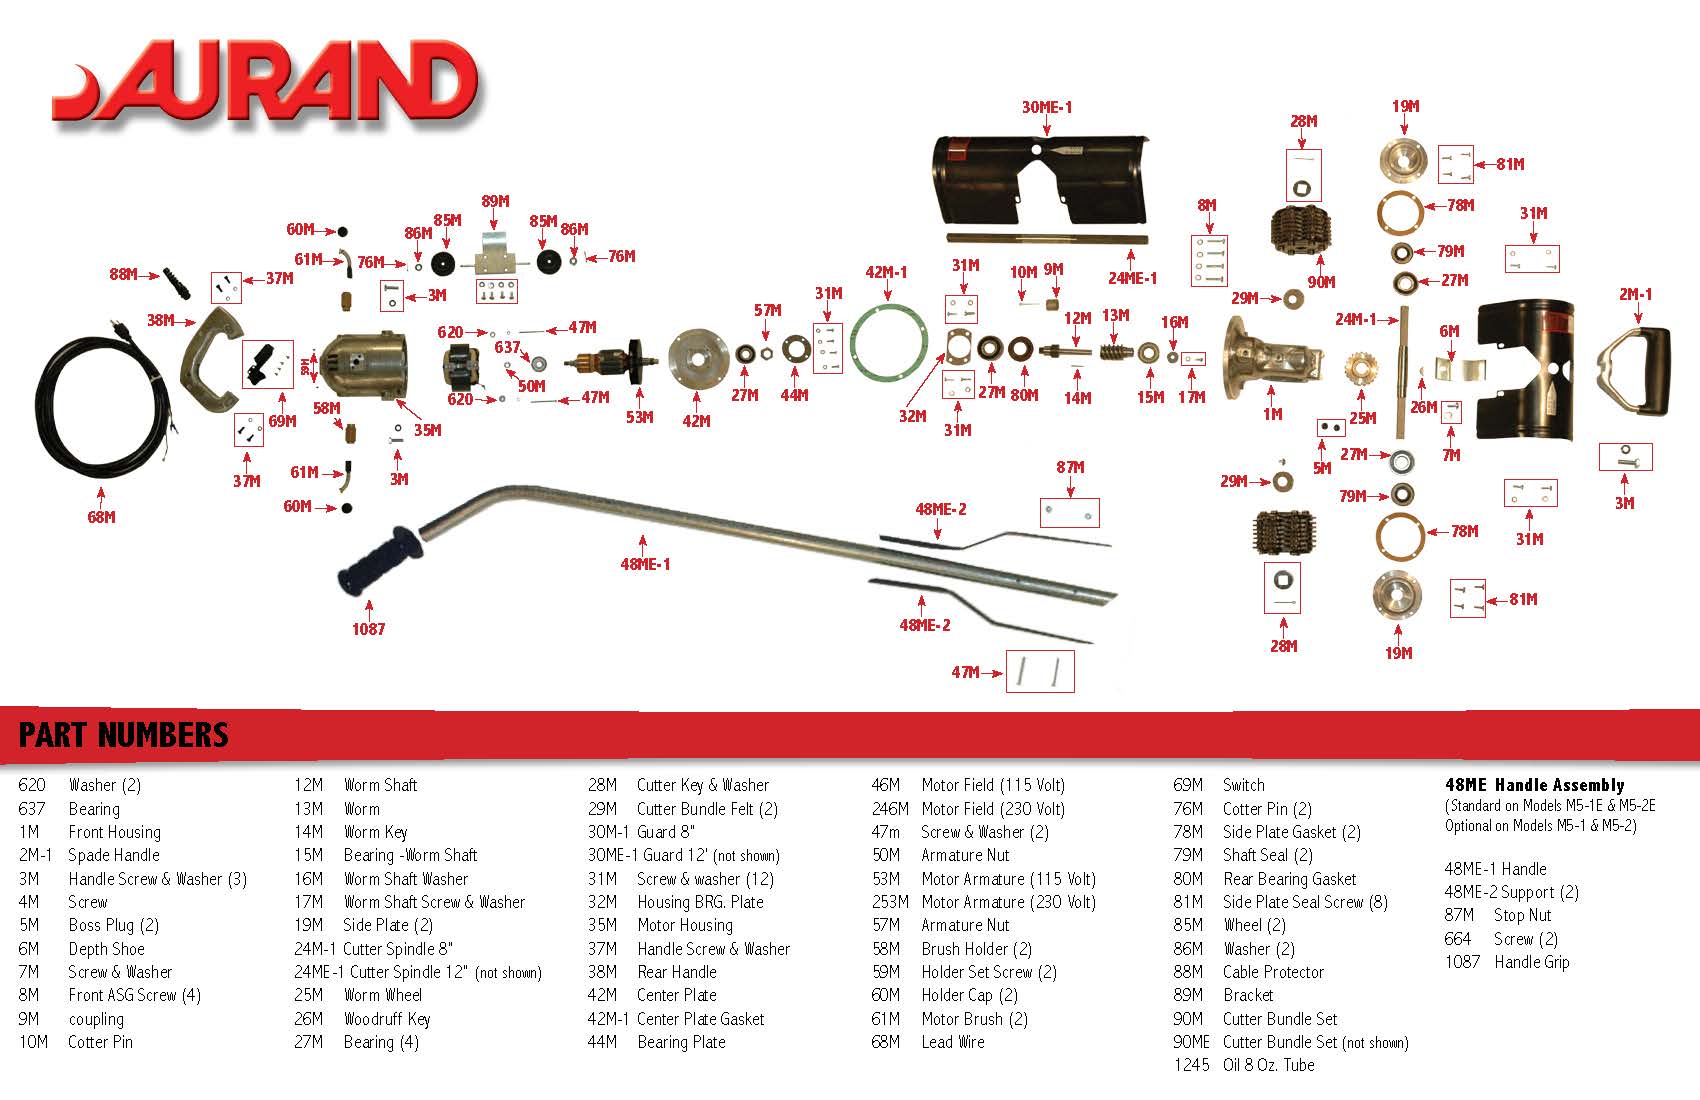 Aurand - Misc Parts